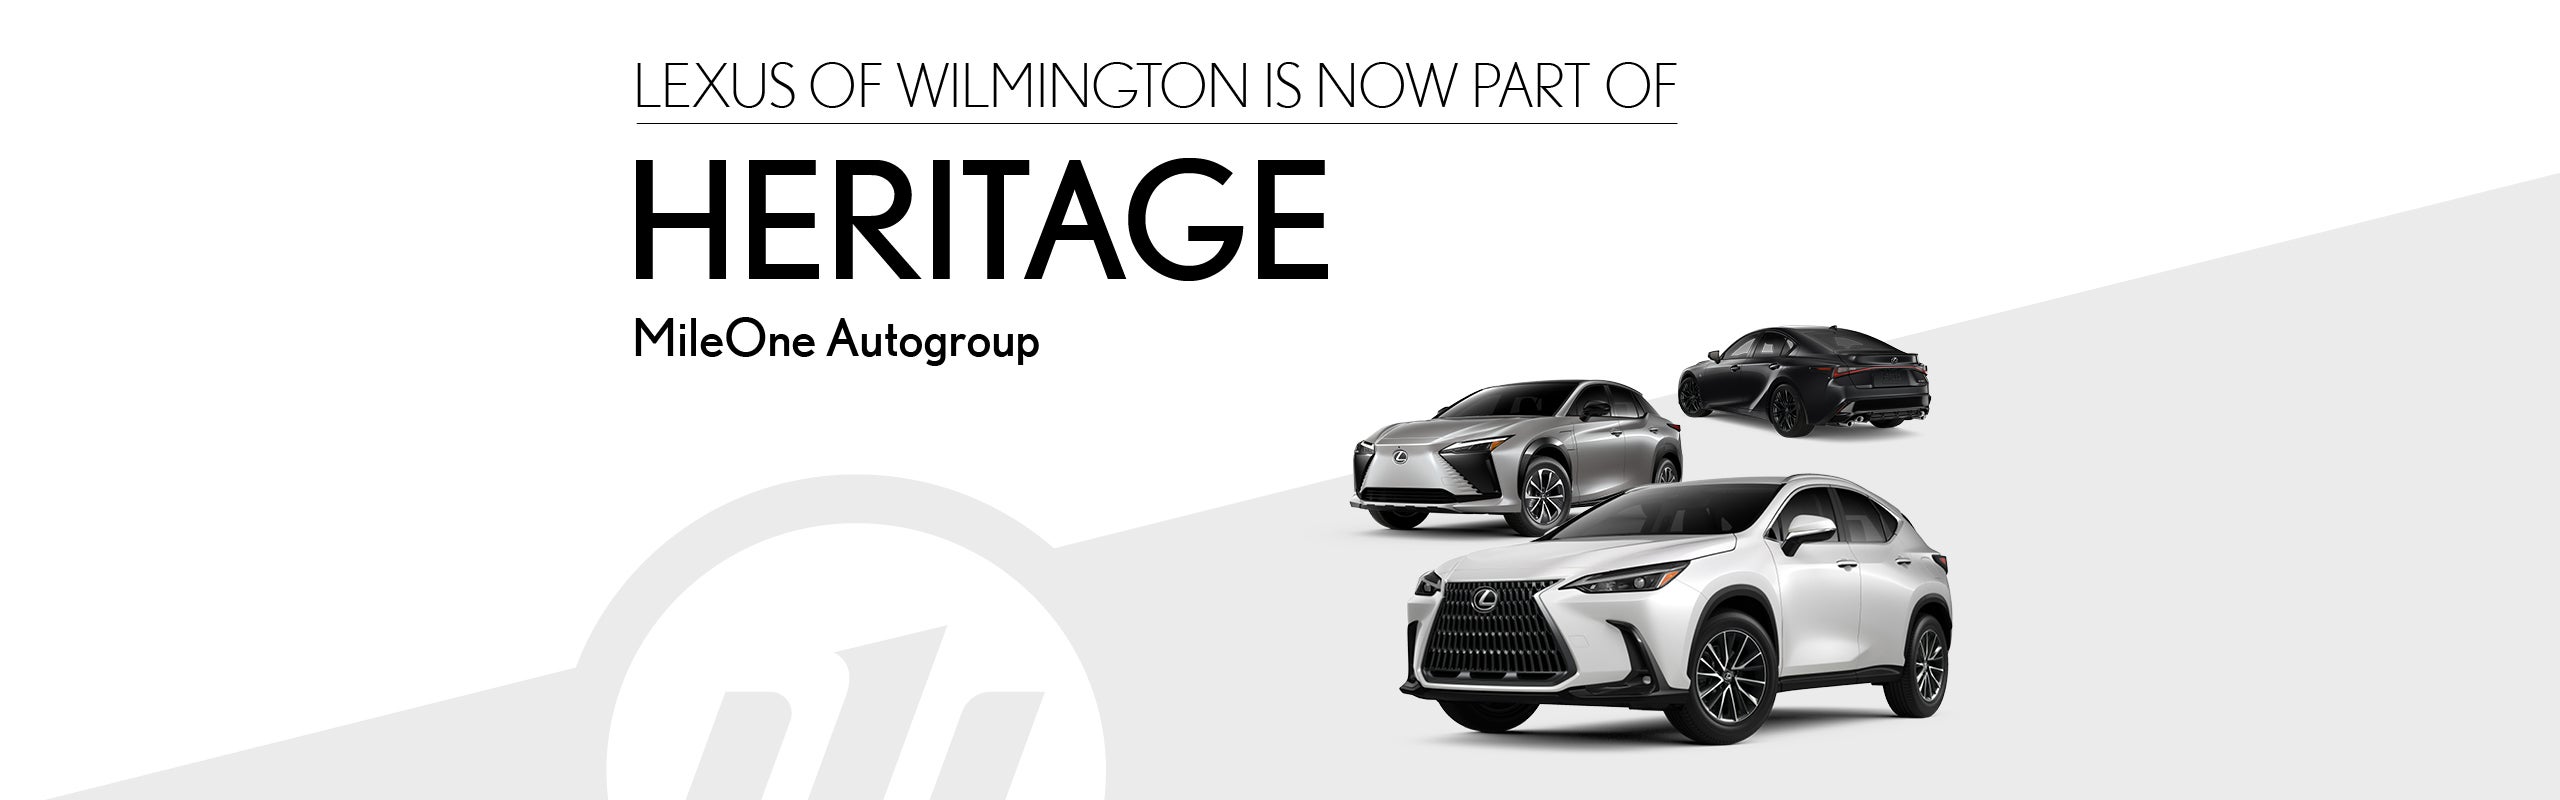 Lexus of Wilmington is now part of Heritage!